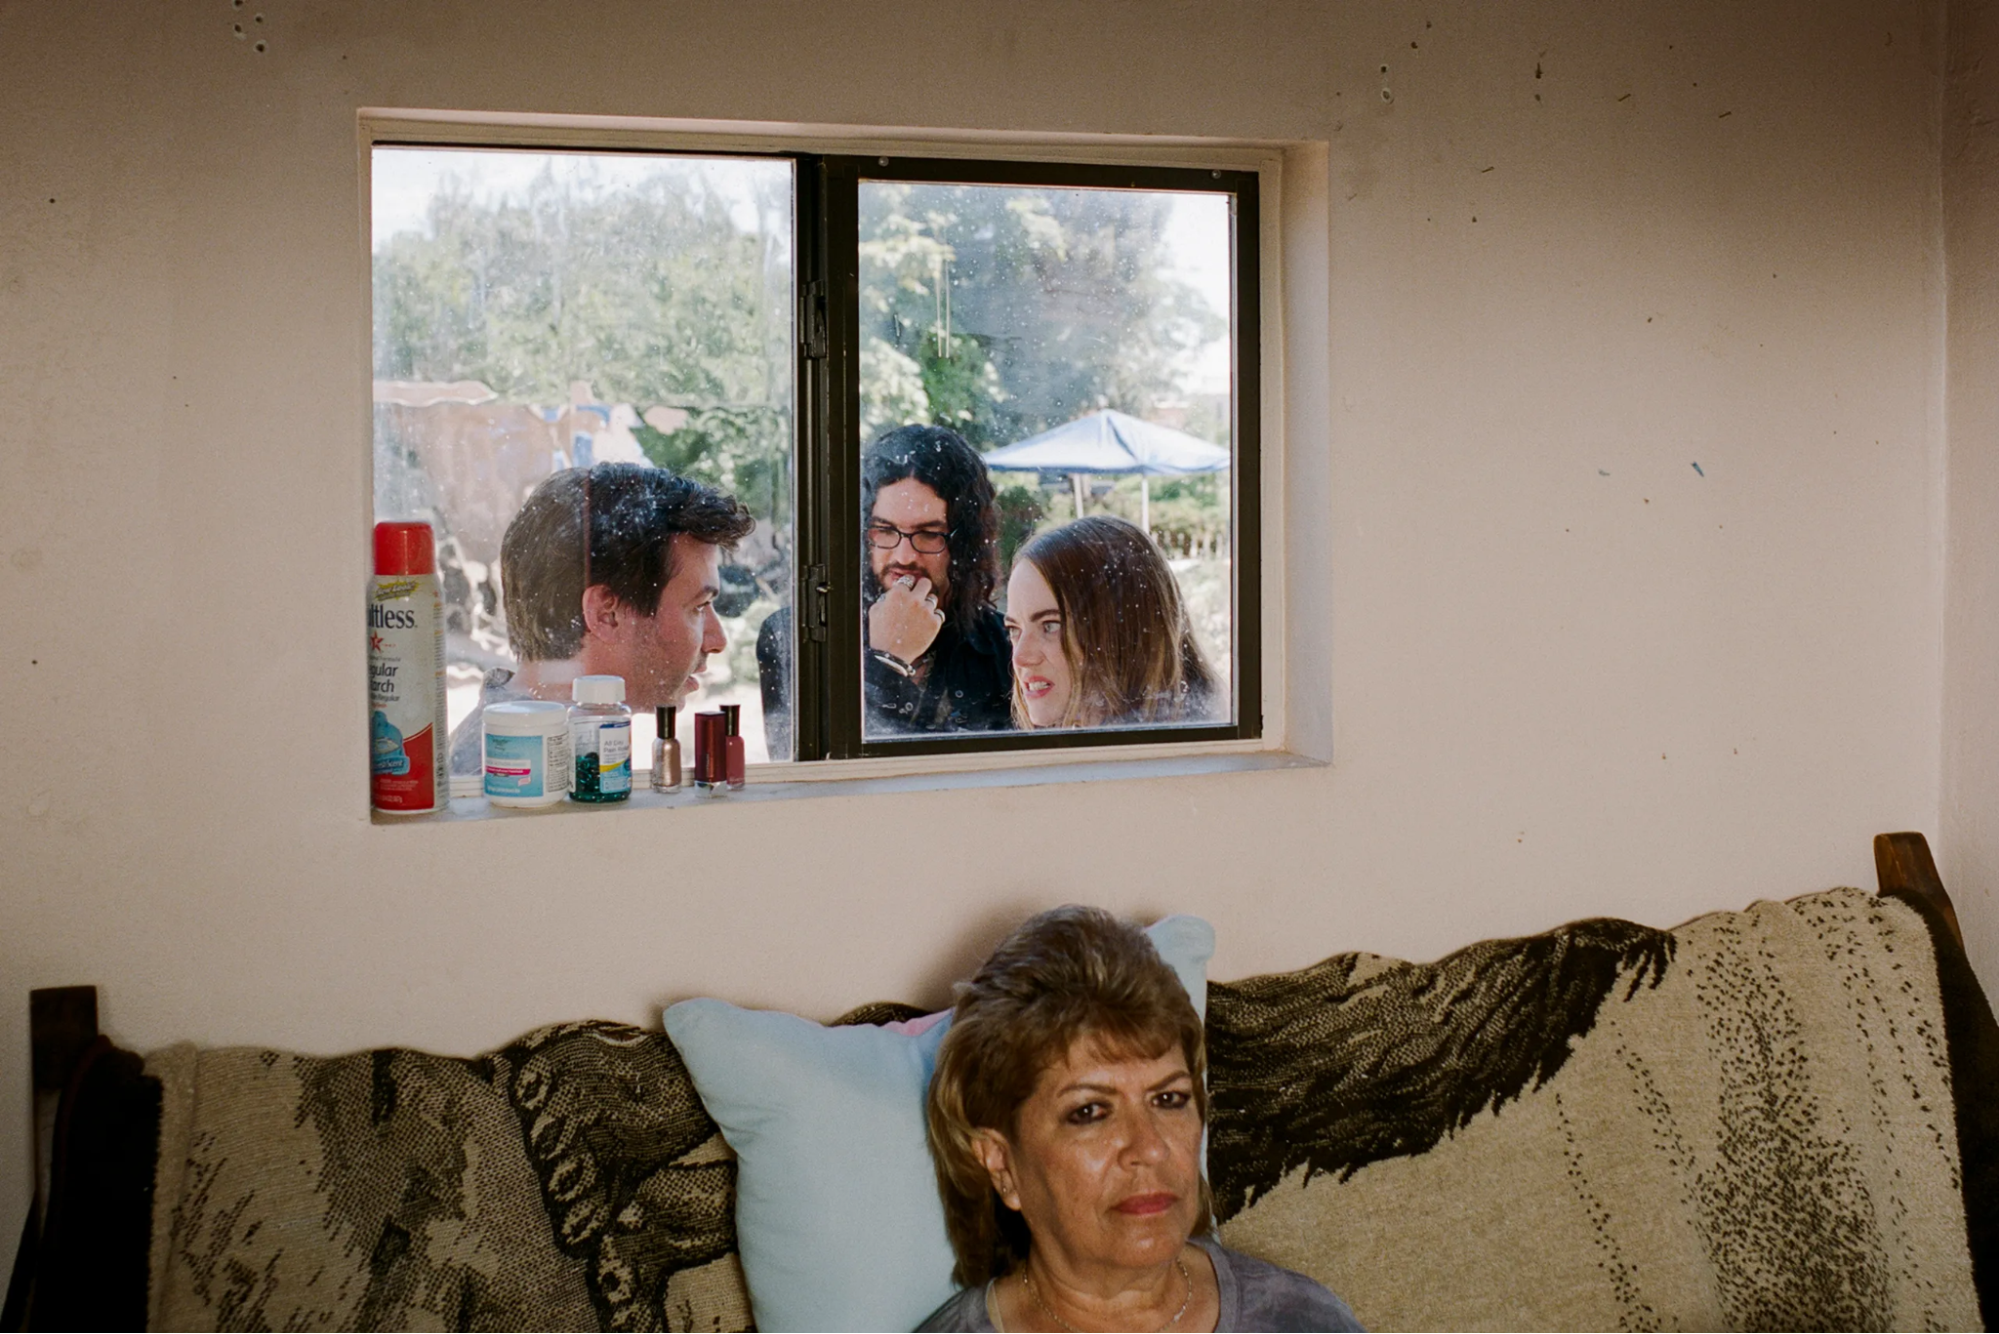 Em primeiro plano, uma senhora, que aparece do pescoço para cima, está sentada em um sofá encostado em uma parede com uma janela logo acima dele. Através da janela, do lado de fora da casa, estão, da esquerda para a direita, os personagens Asher, Dougie e Whitney conversando entre si.